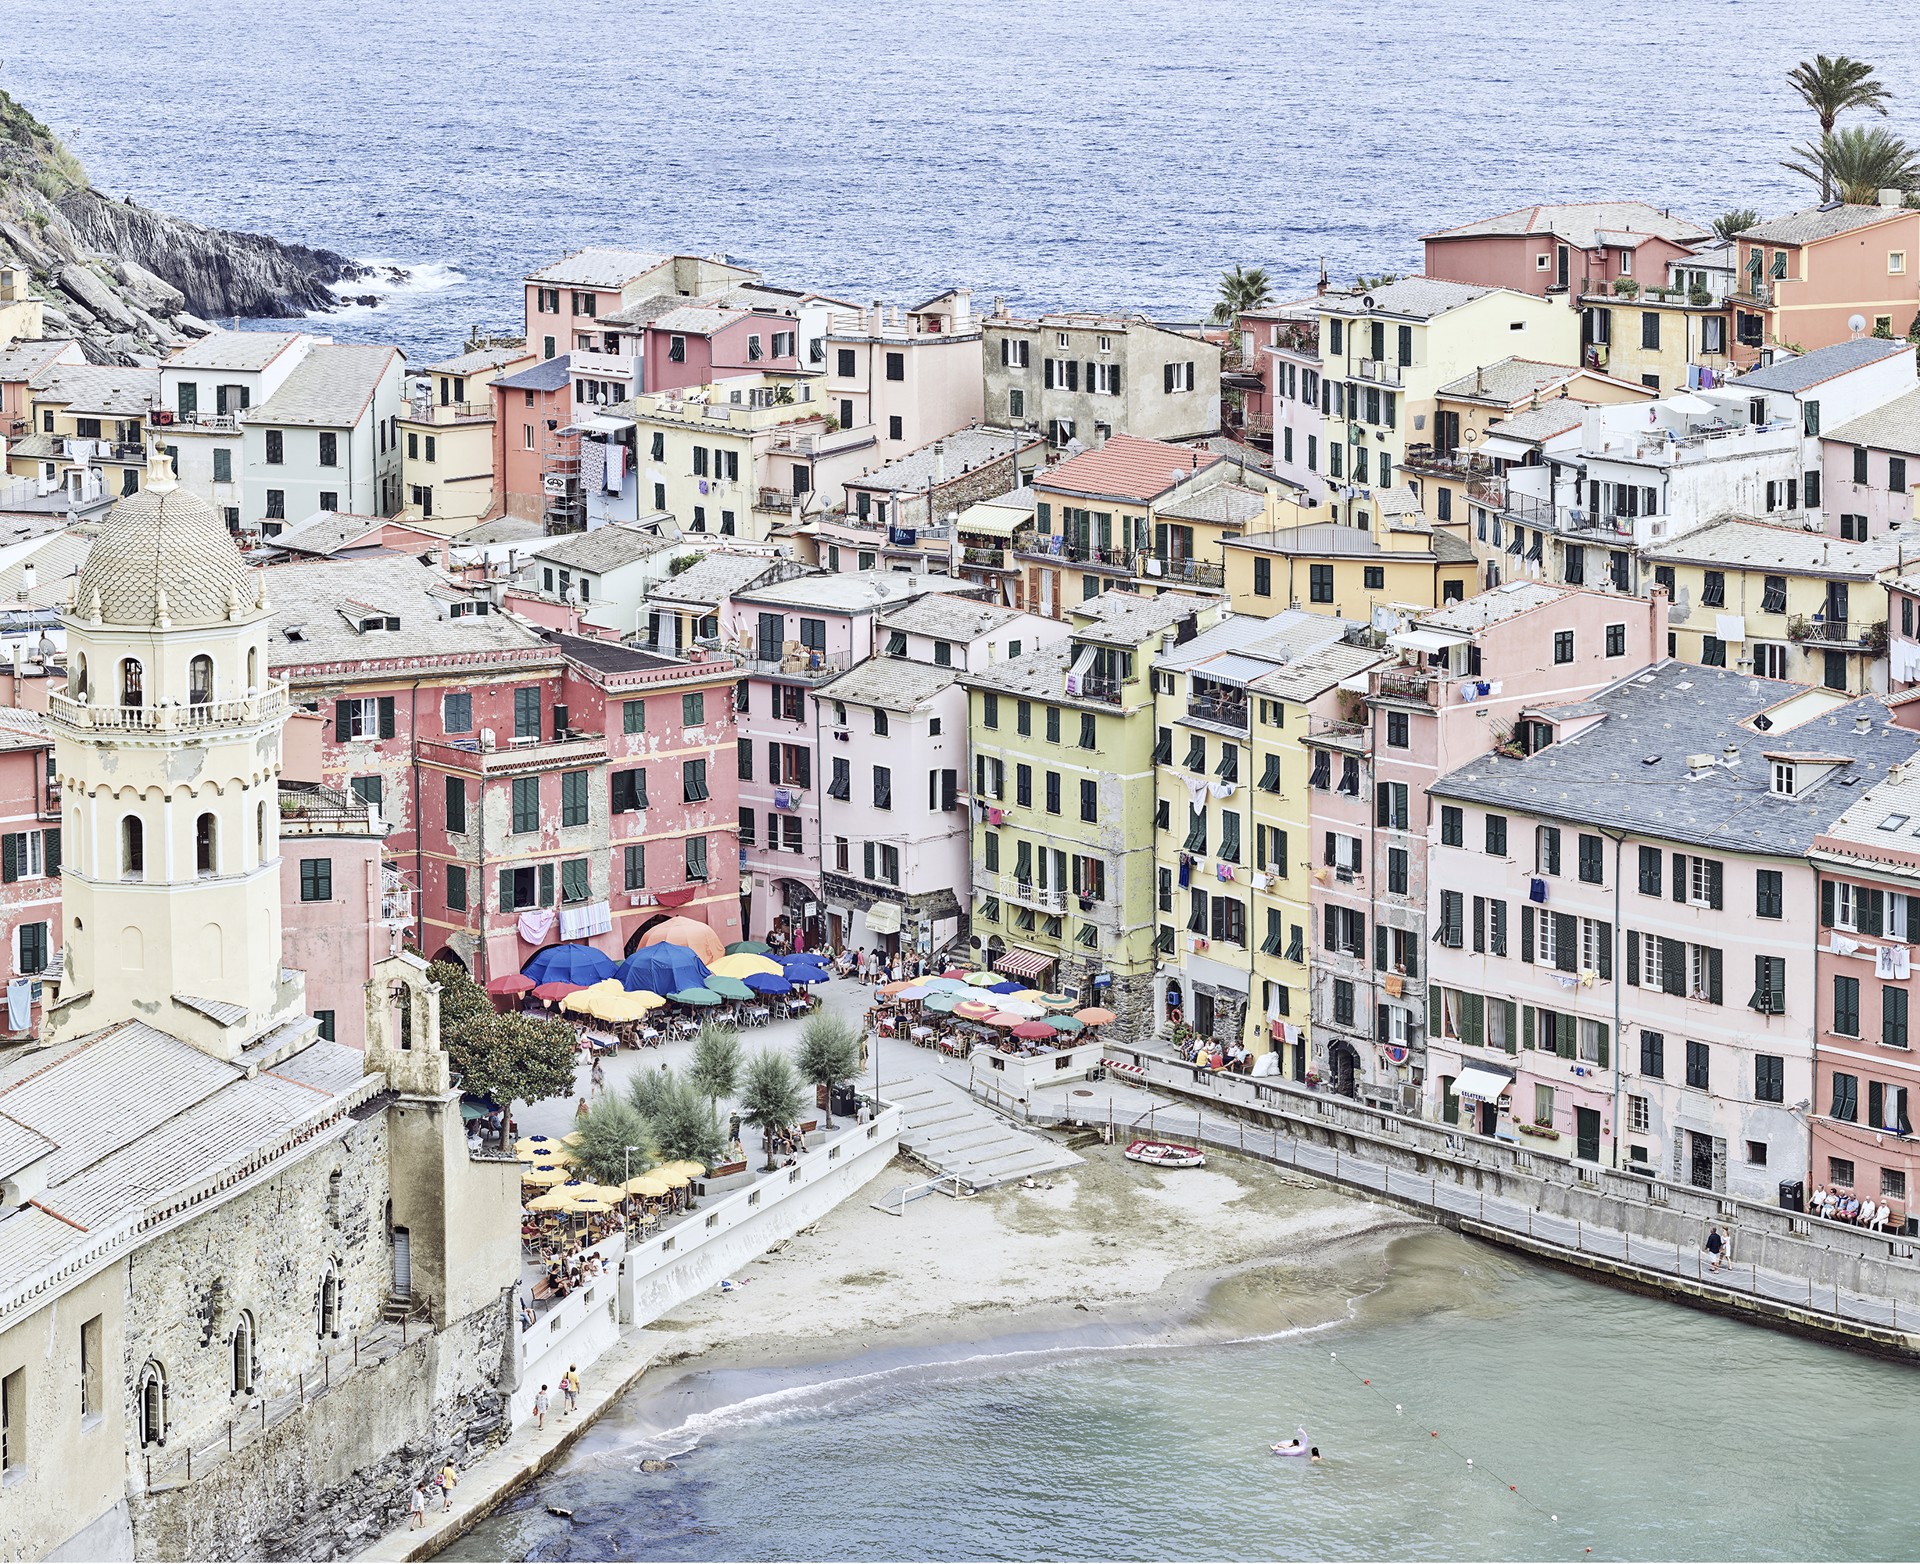 Vernazza Harbour, Cinque Terre, Italy by David Burdeny